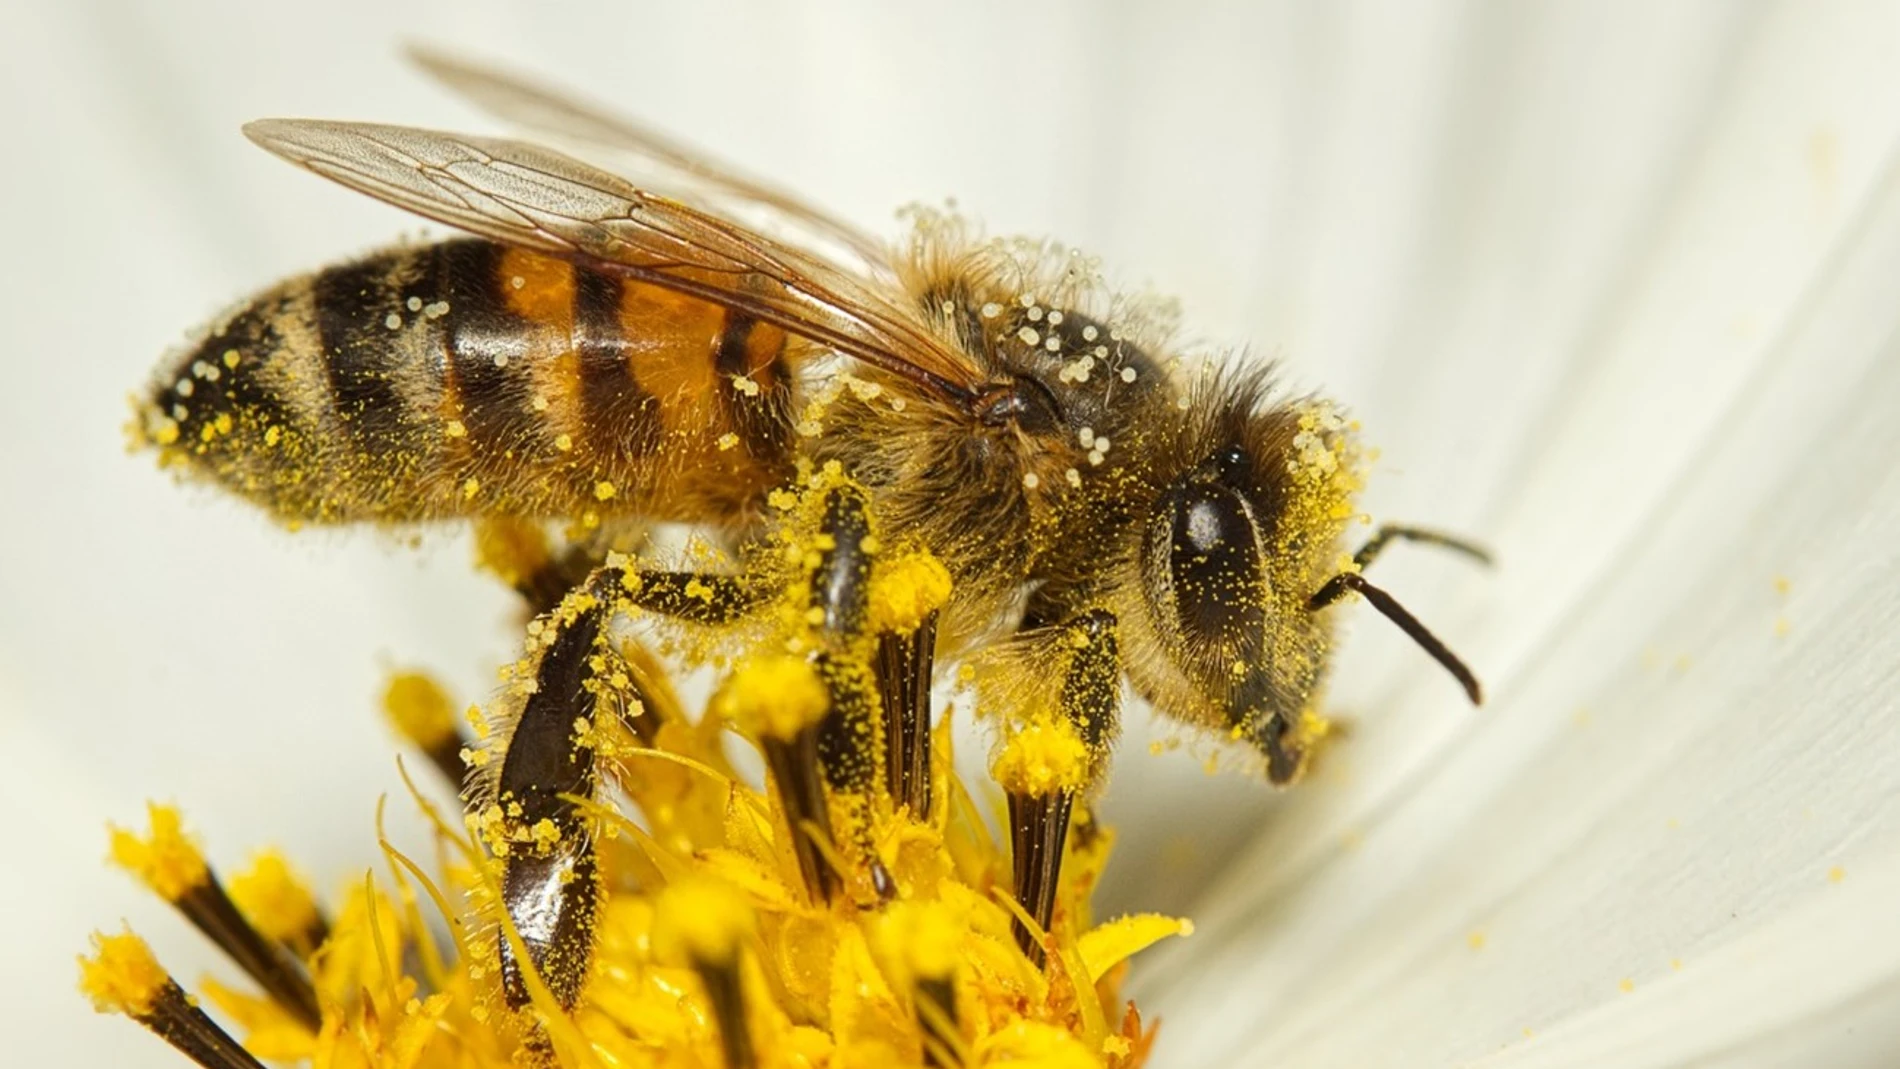 Aumenta tu energía y combate el estrés con polen de abeja - Blog NATFY